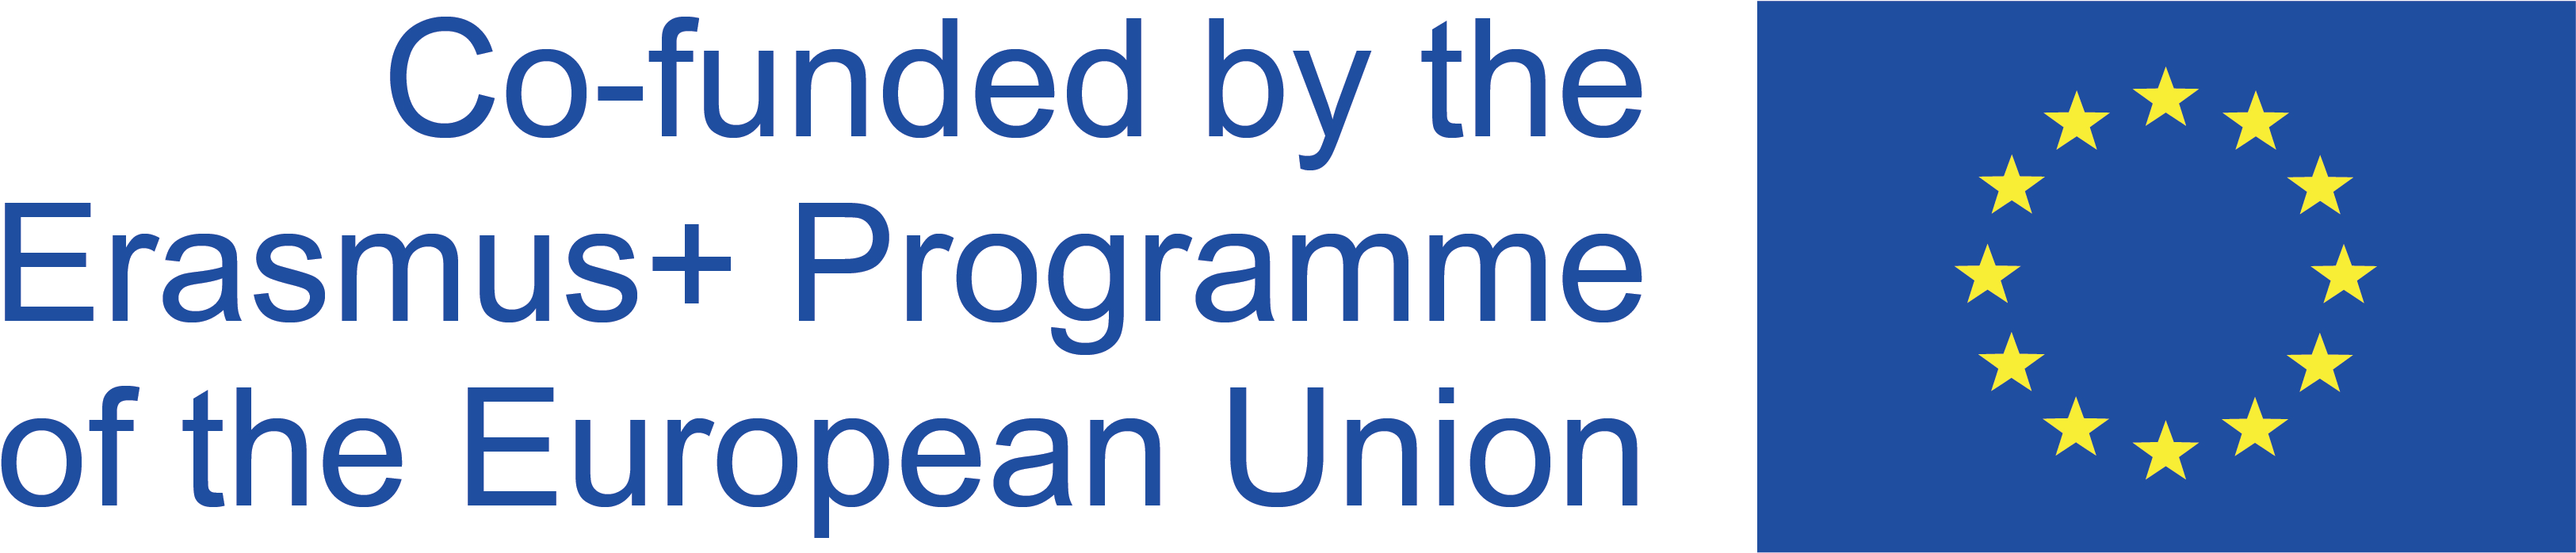 P60_Website_Erasmus_Logo